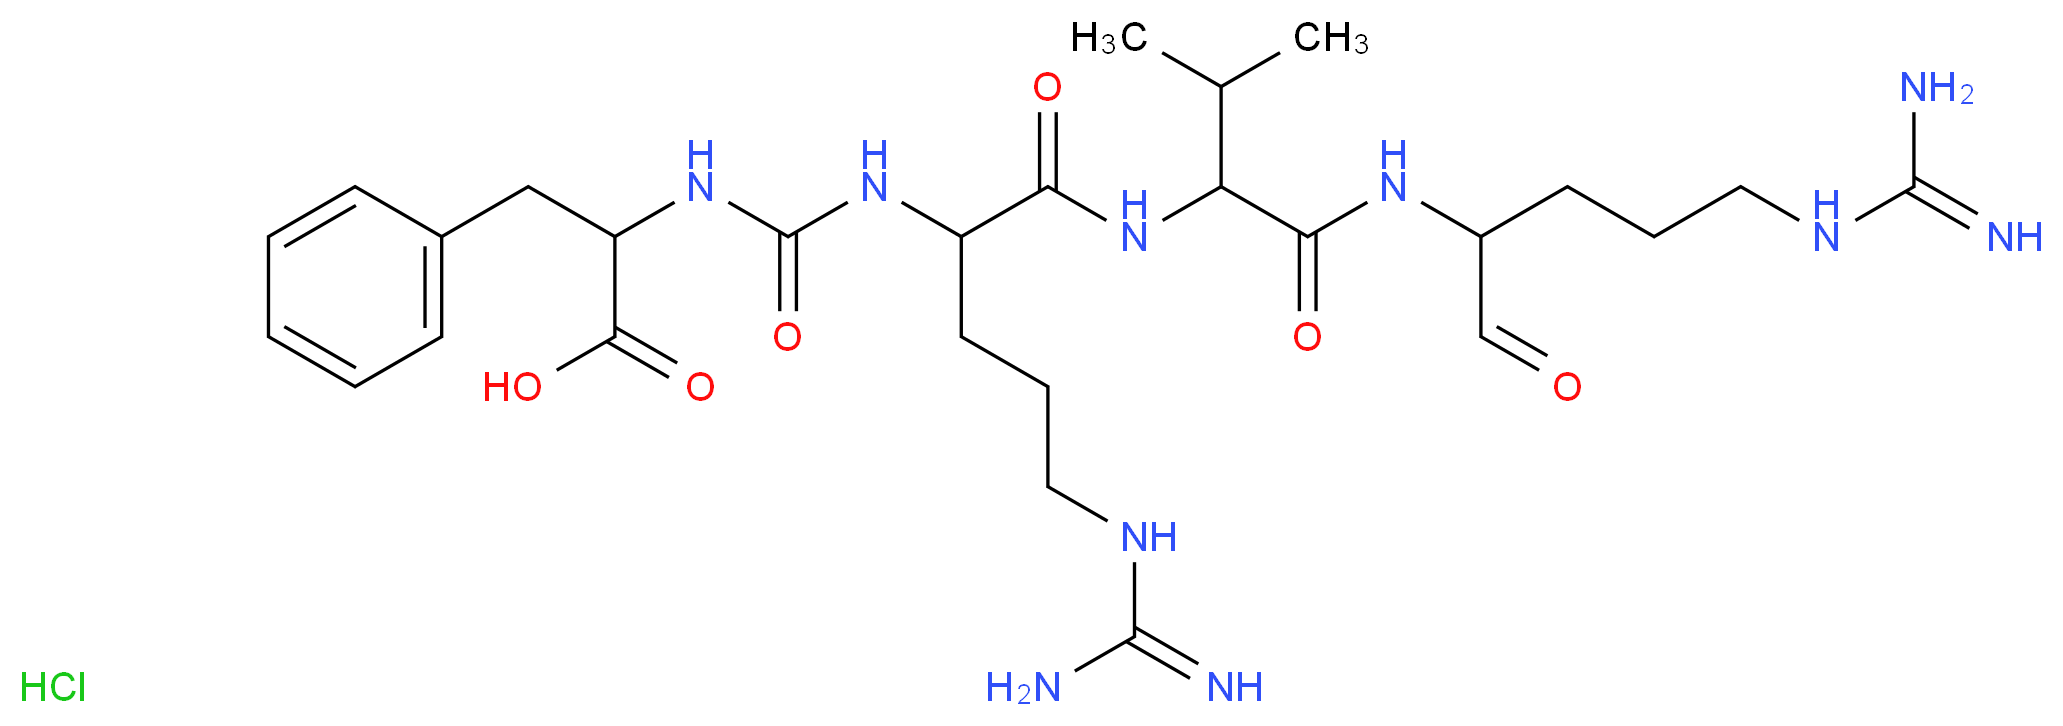 37691-11-5 molecular structure